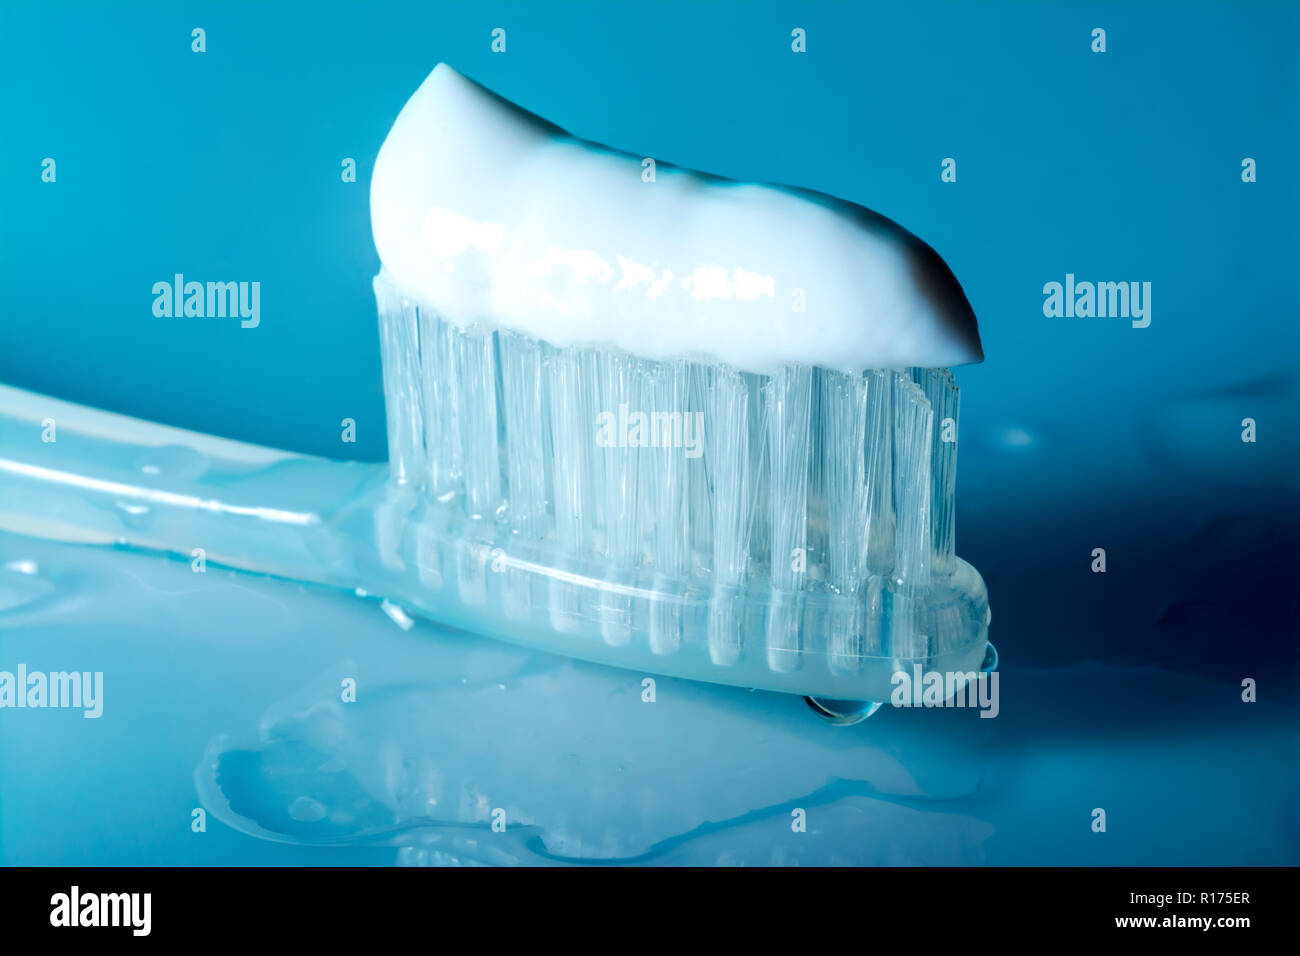 Il dentifricio sullo spazzolino close-up su una tabella con le gocce di acqua su uno sfondo blu scuro Foto Stock